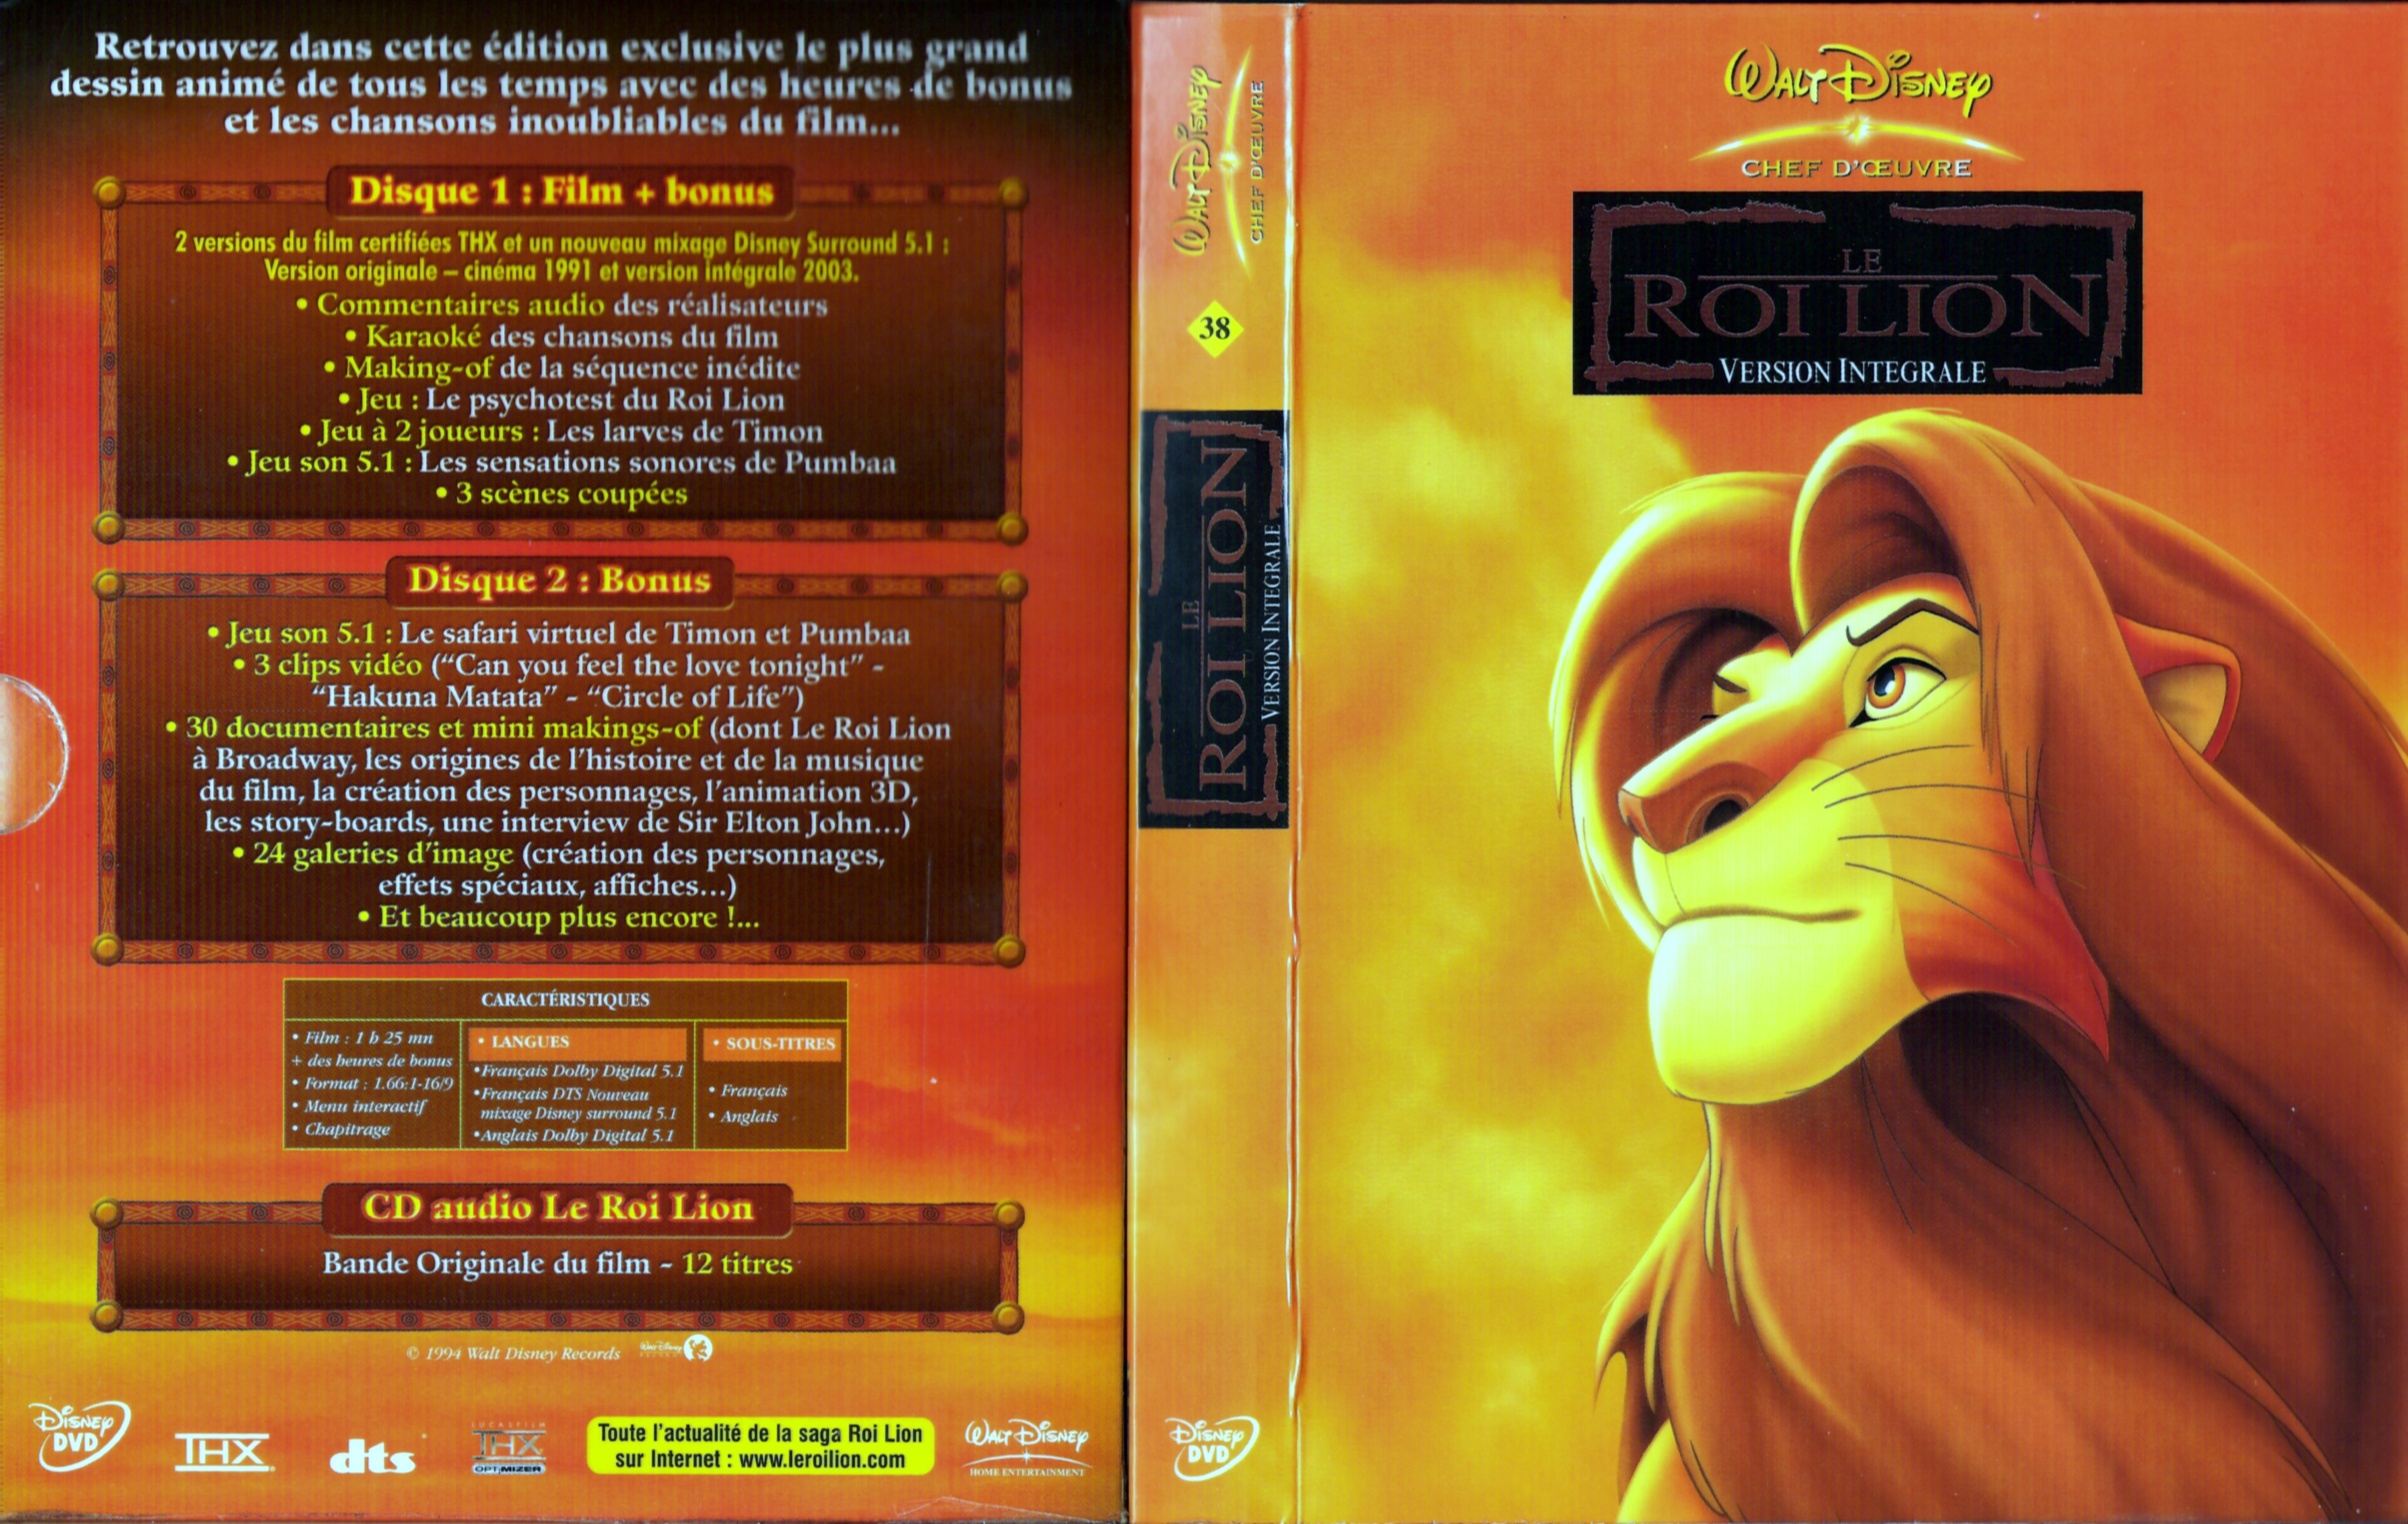 Jaquette DVD Le roi lion v2